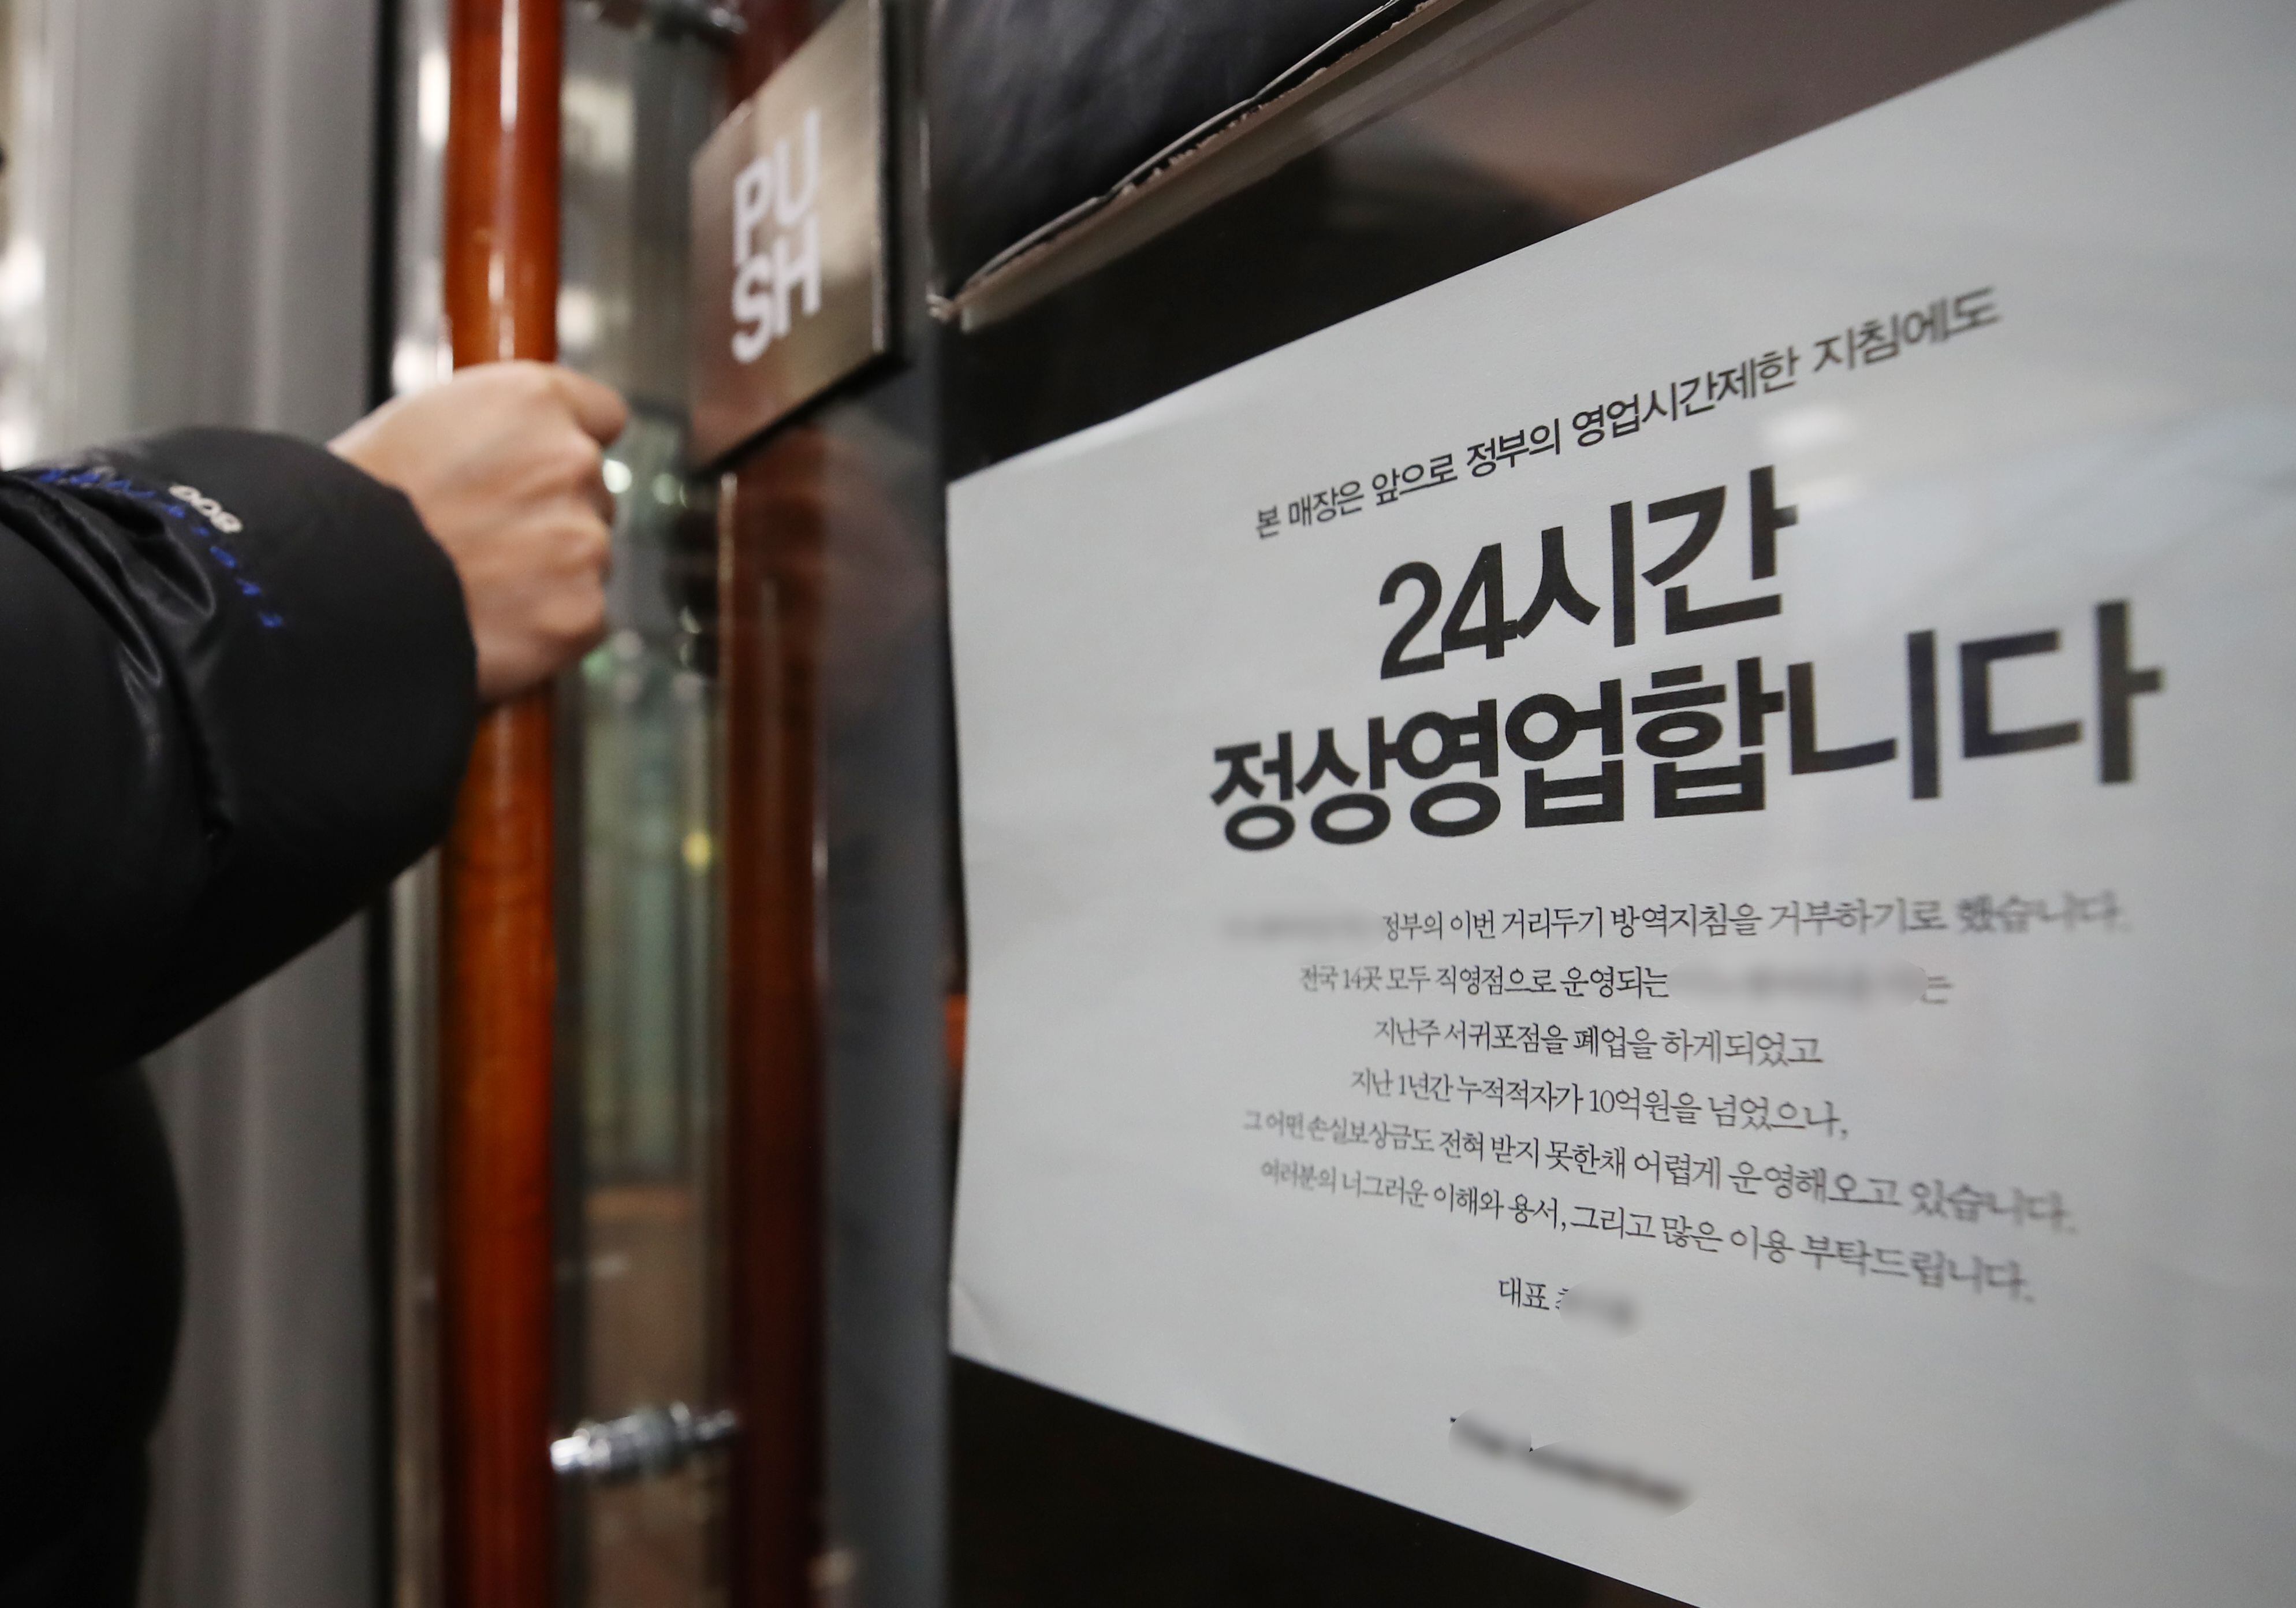 지난 21일 인천의 한 대형 카페 직영점에 '정부의 방역지침을 거부, 24시간 정상 영업'을 알리는 안내문이 붙어 있다. /연합뉴스